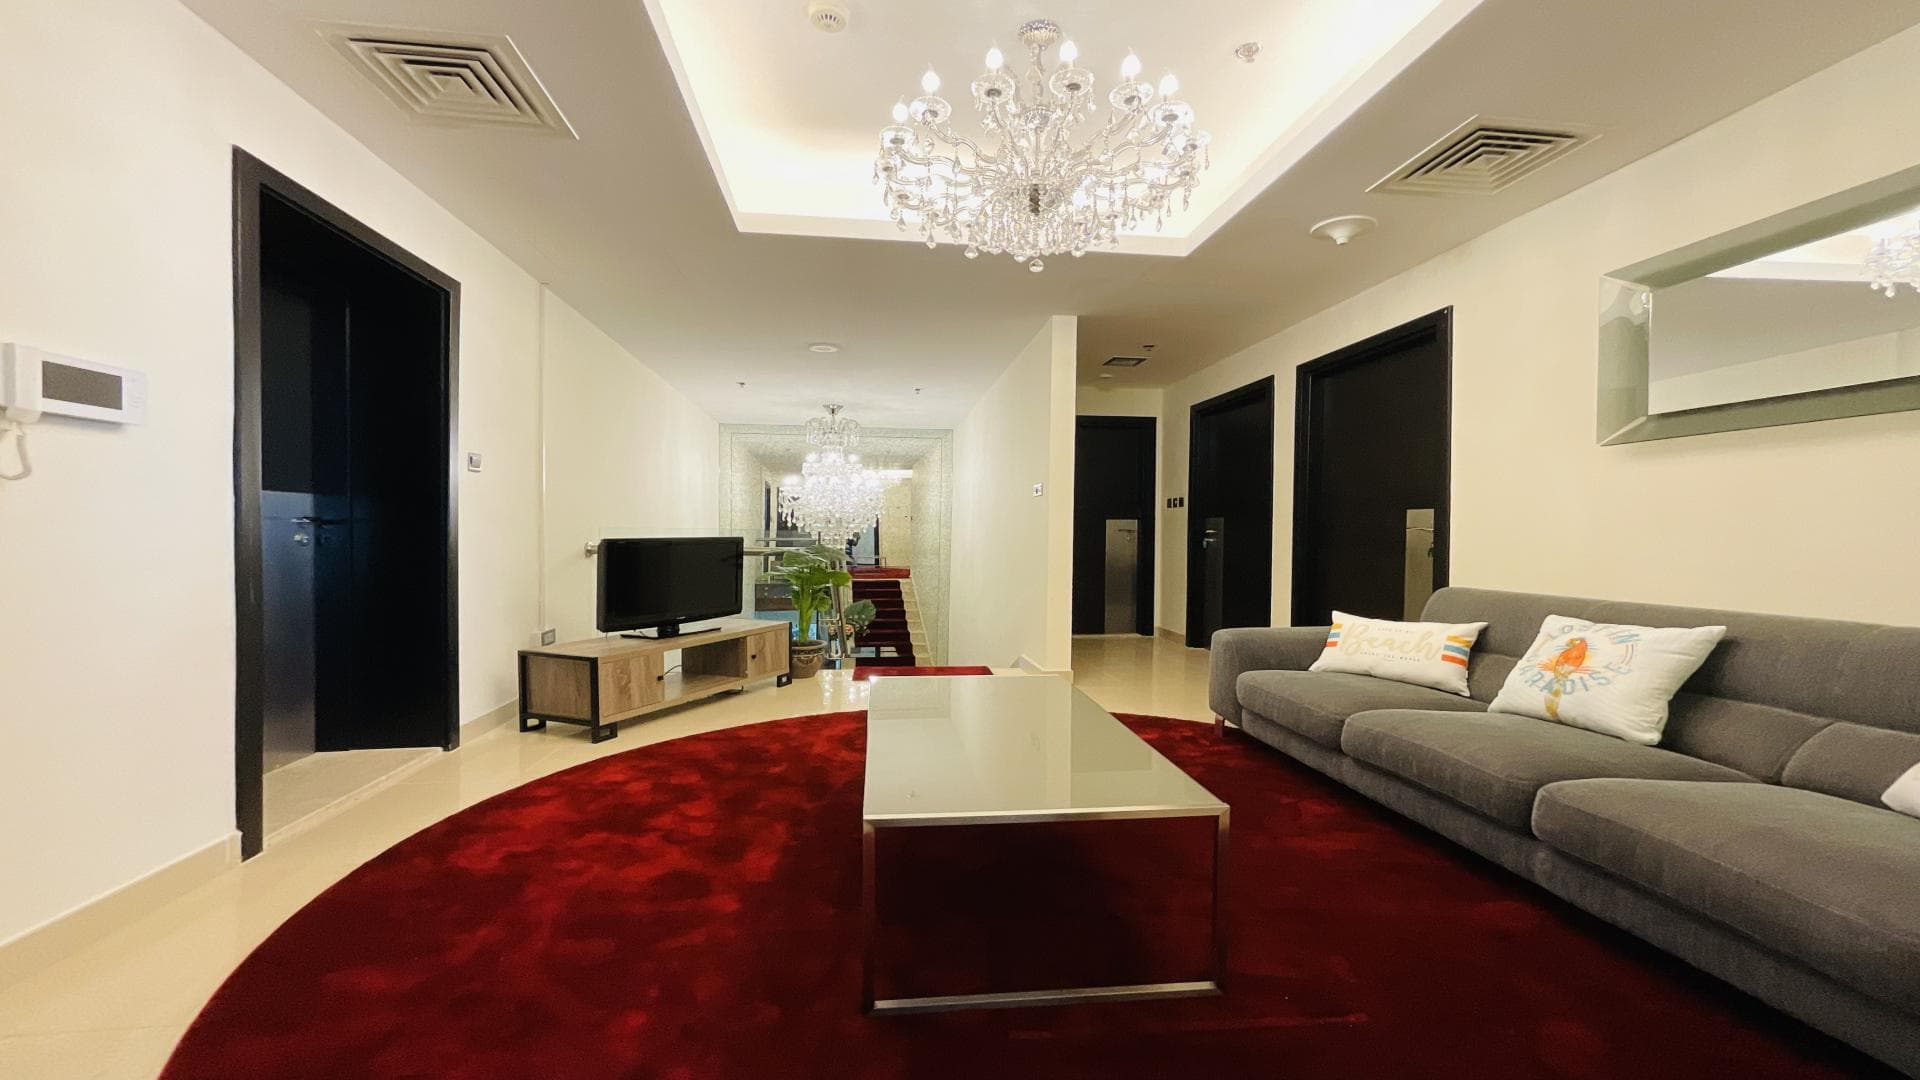 3 Bedroom Apartment For Rent  Lp35741 2d6f1870912b3400.jpg